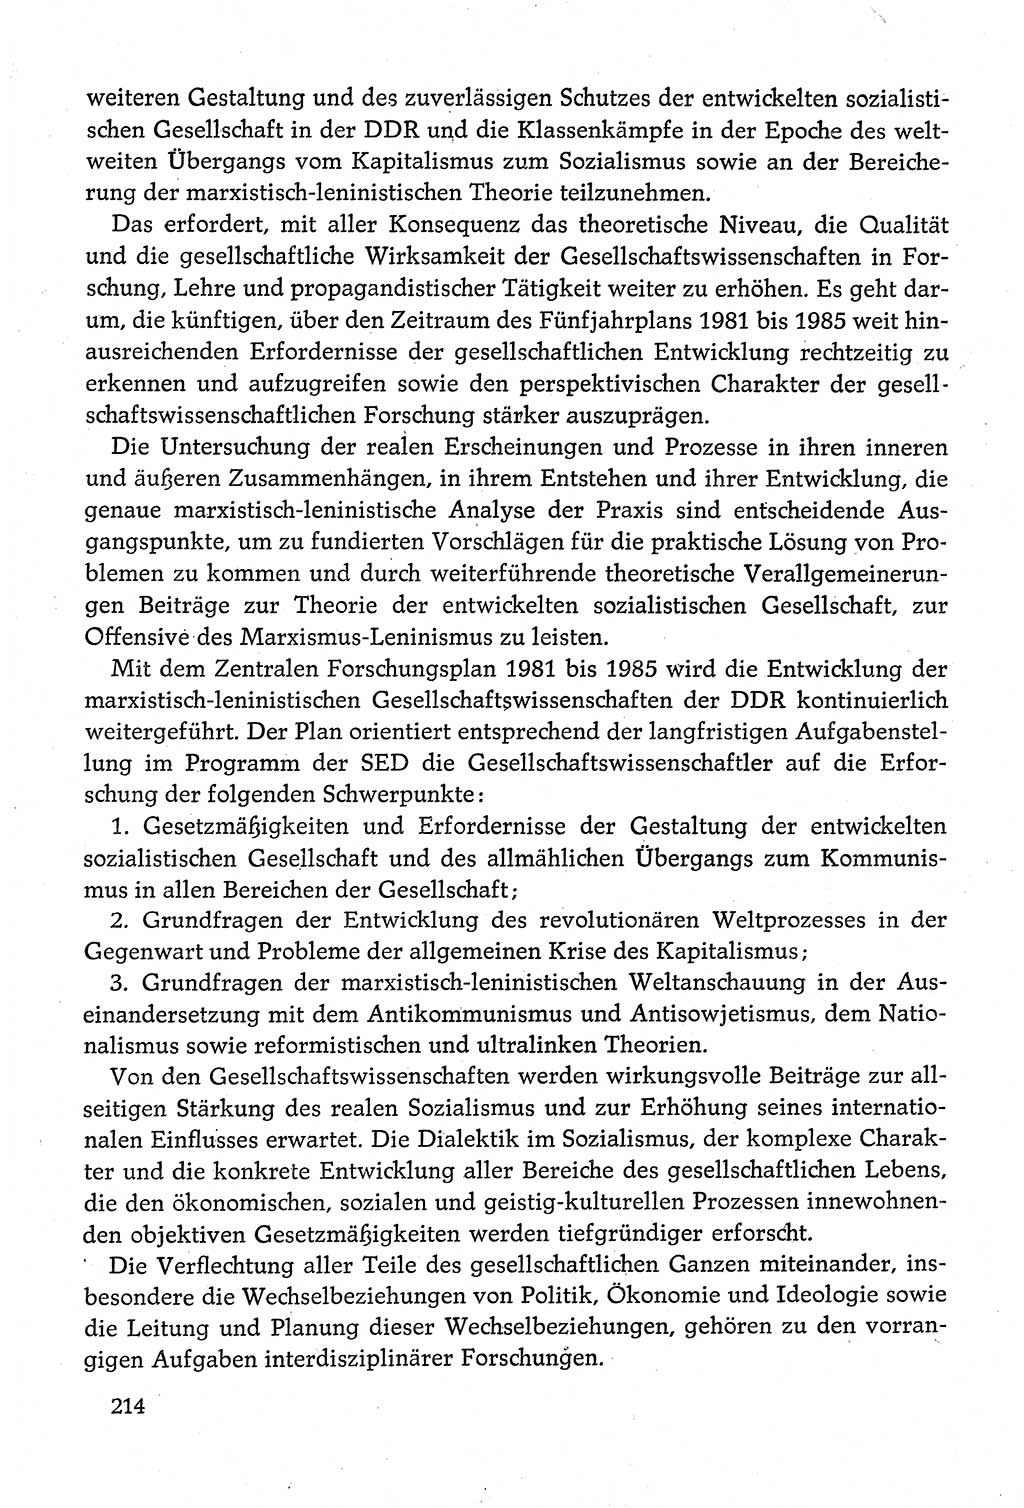 Dokumente der Sozialistischen Einheitspartei Deutschlands (SED) [Deutsche Demokratische Republik (DDR)] 1980-1981, Seite 214 (Dok. SED DDR 1980-1981, S. 214)